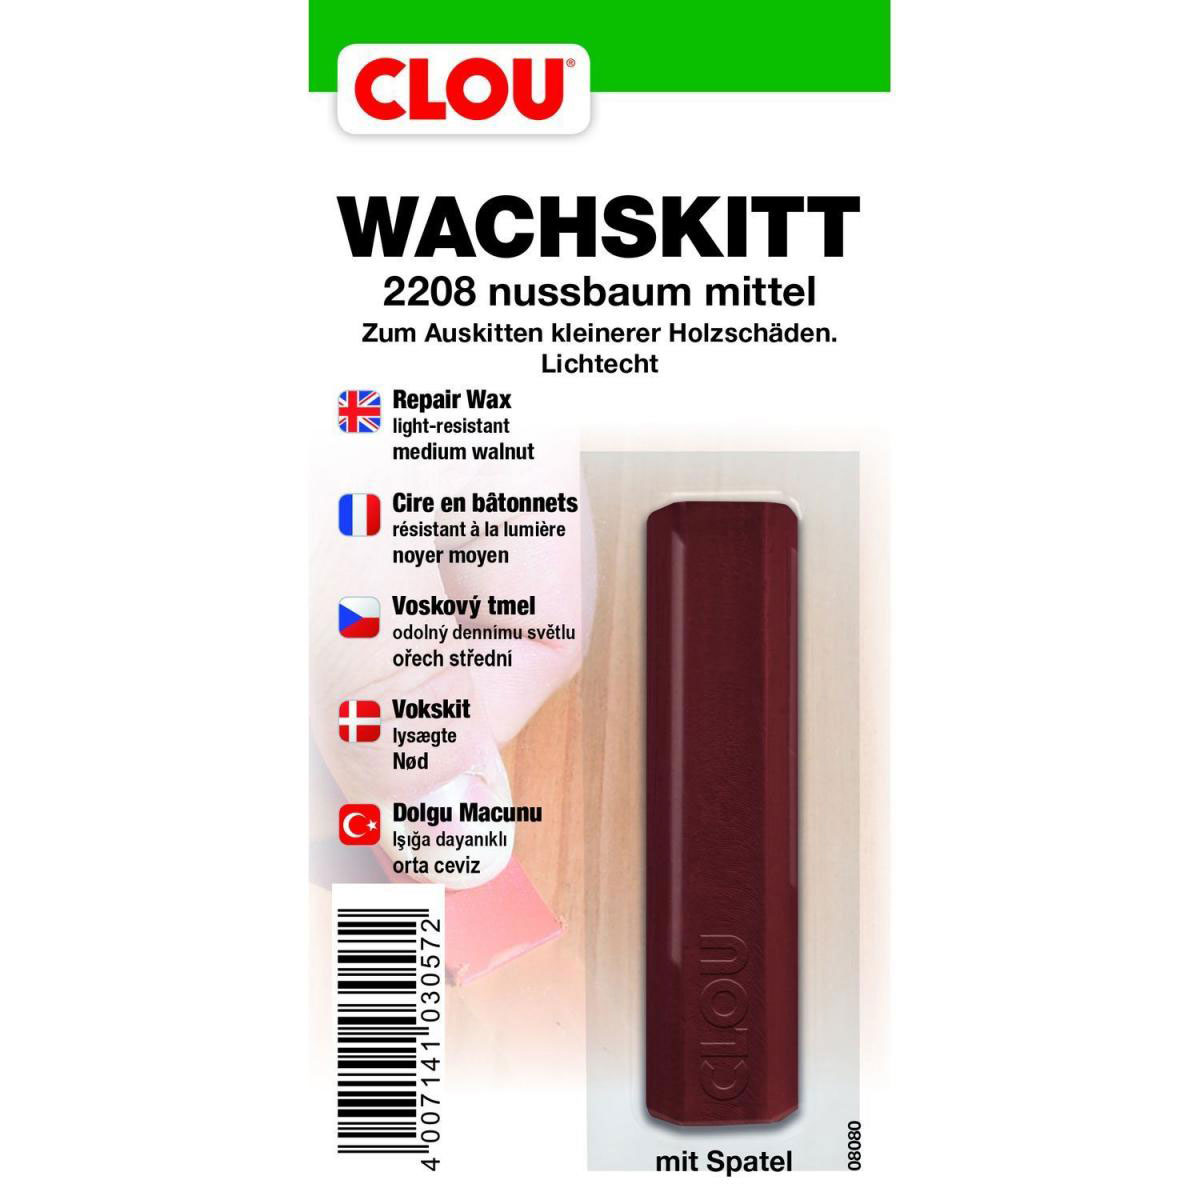 Clou Wachskitt „Nussbaum mittel“